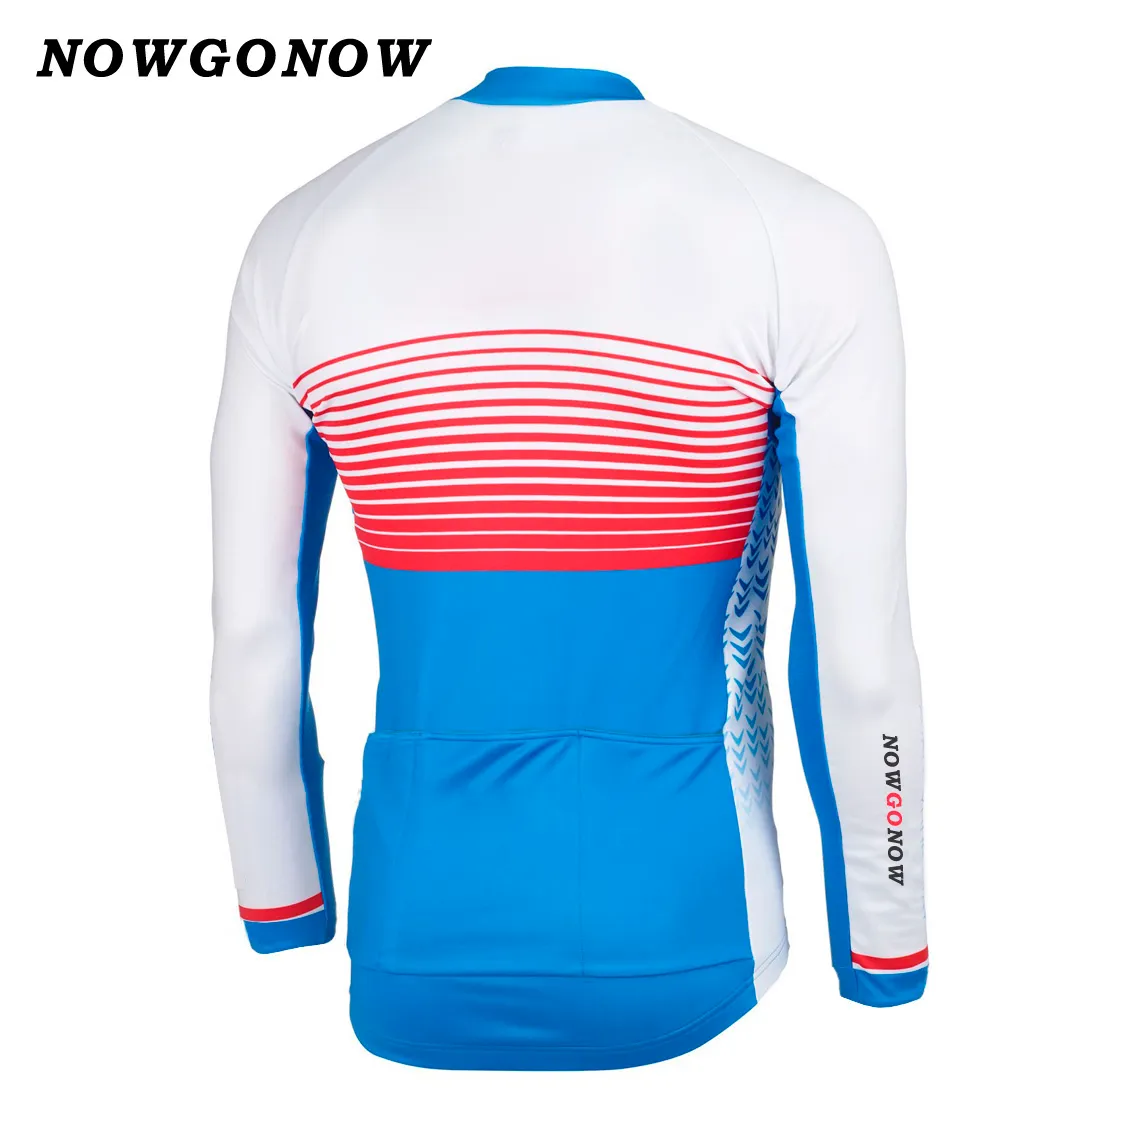 Новый горячий 2017 велоспорт Джерси одежда с длинным рукавом красный синий белый ретро команда велосипед одежда mtb дорога велосипед цикл Майо ciclismo лето NOWGONOW